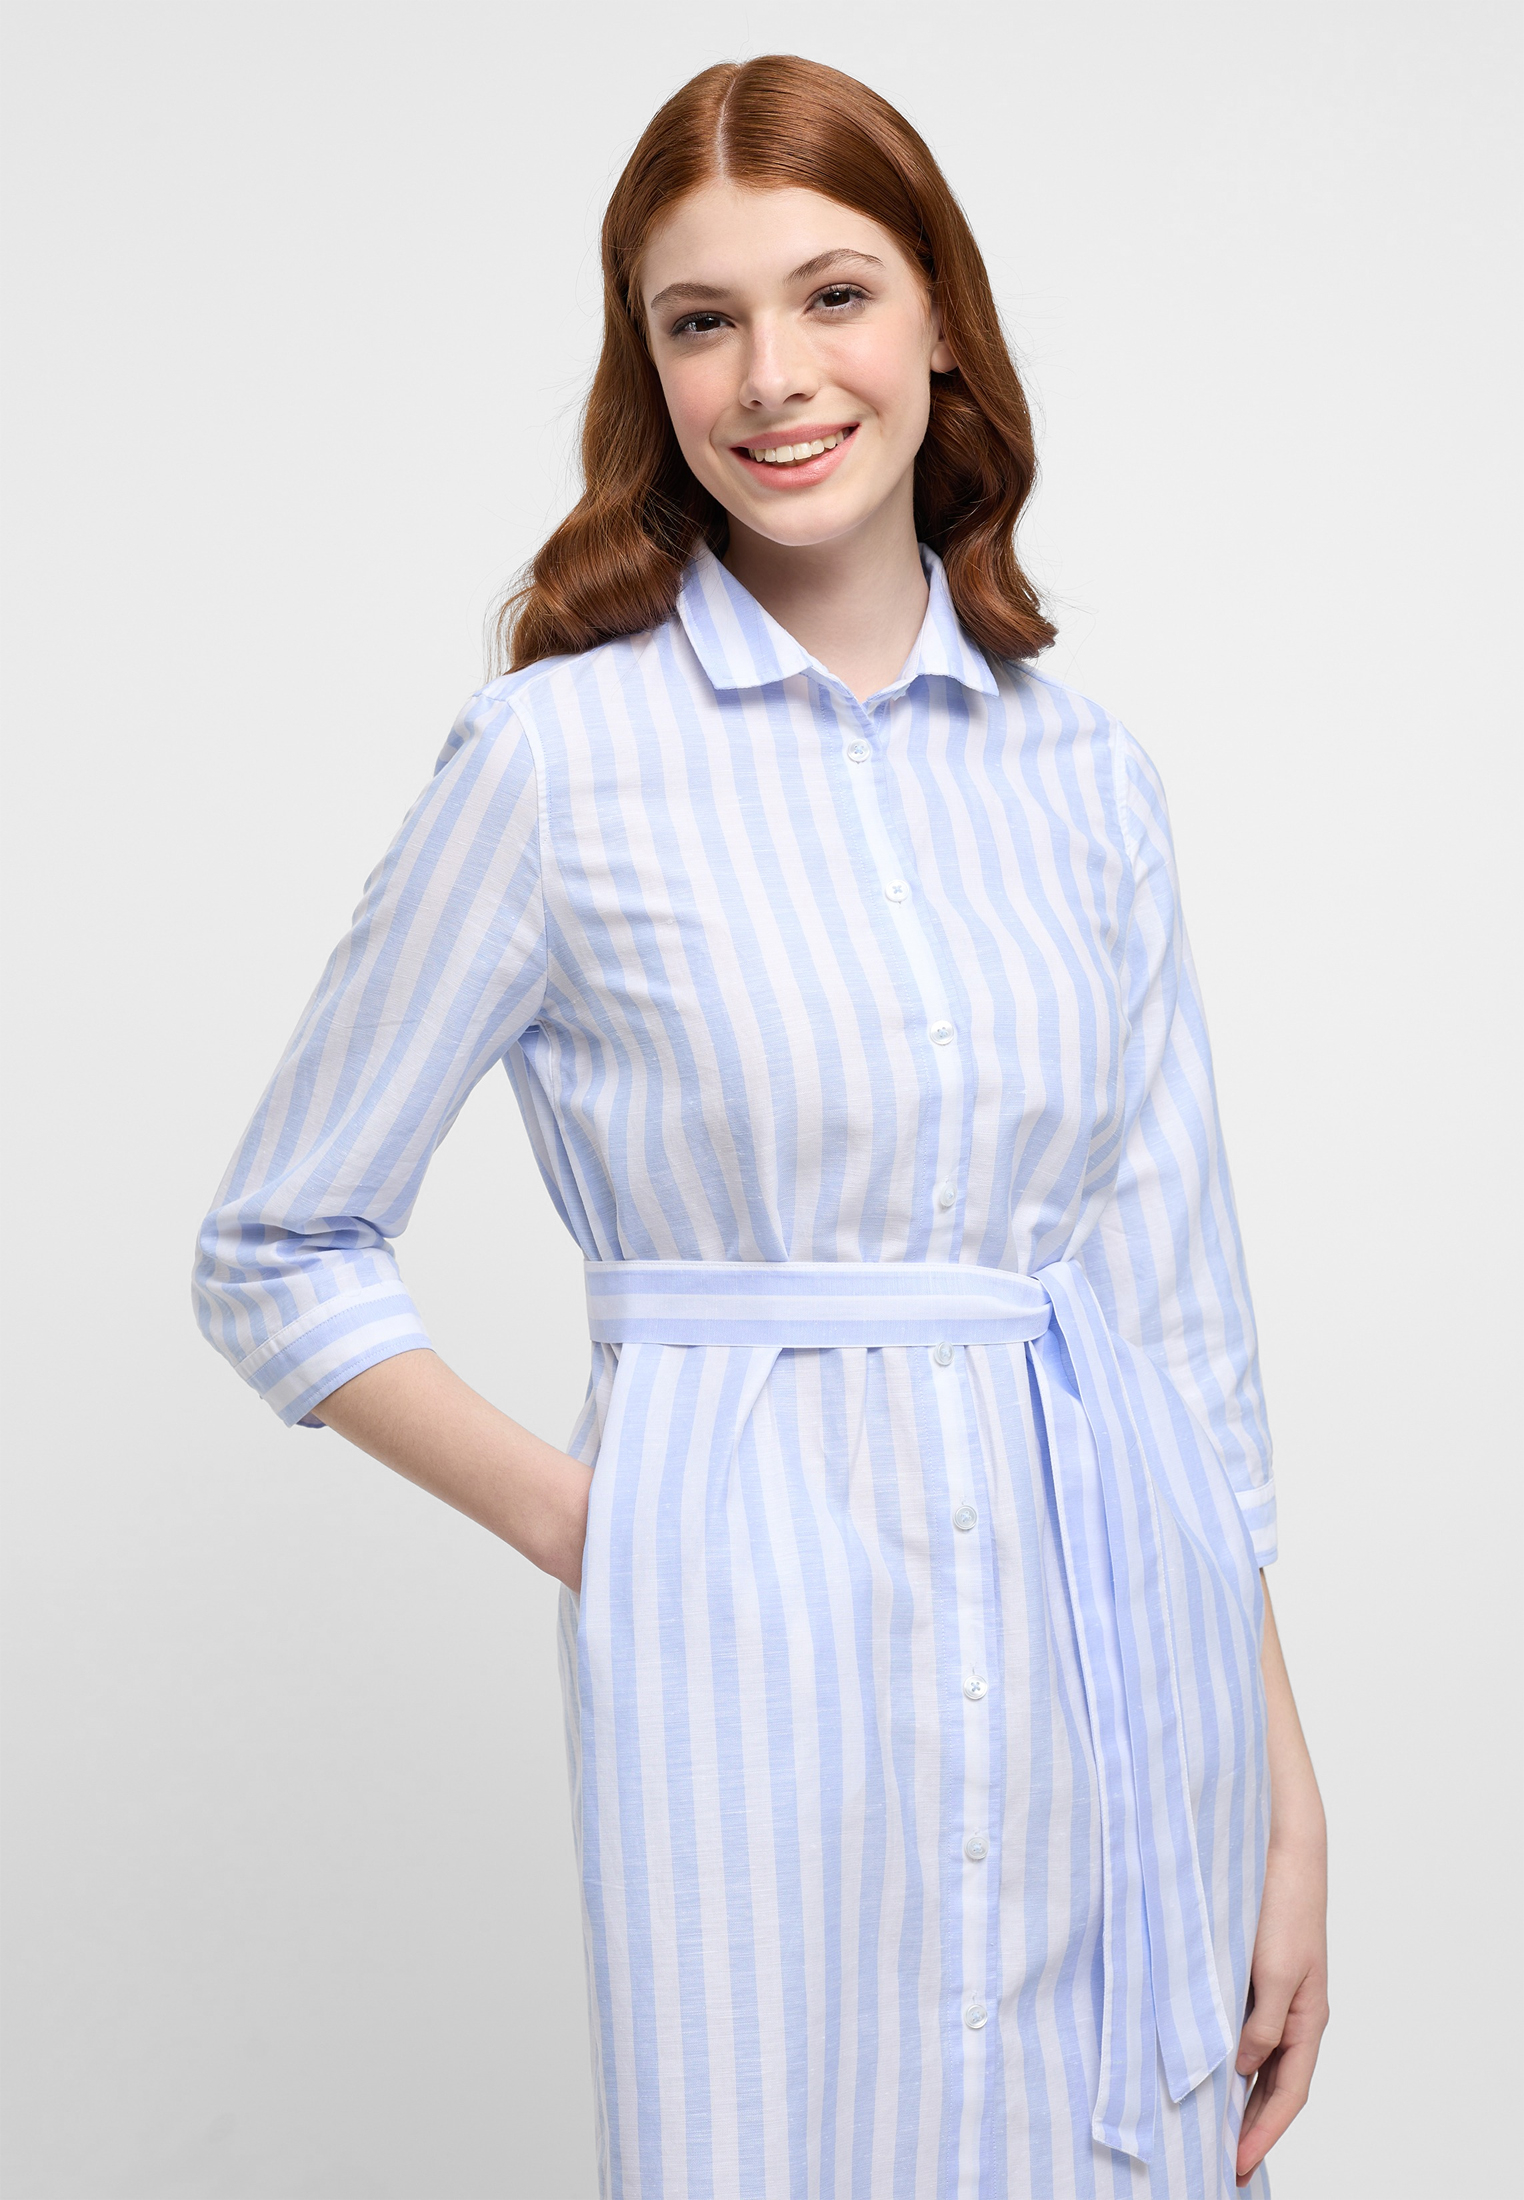 Hemdblusenkleid in light blue | blue | light | | striped 2DR00267-01-11-46-3/4 46 3/4 sleeves